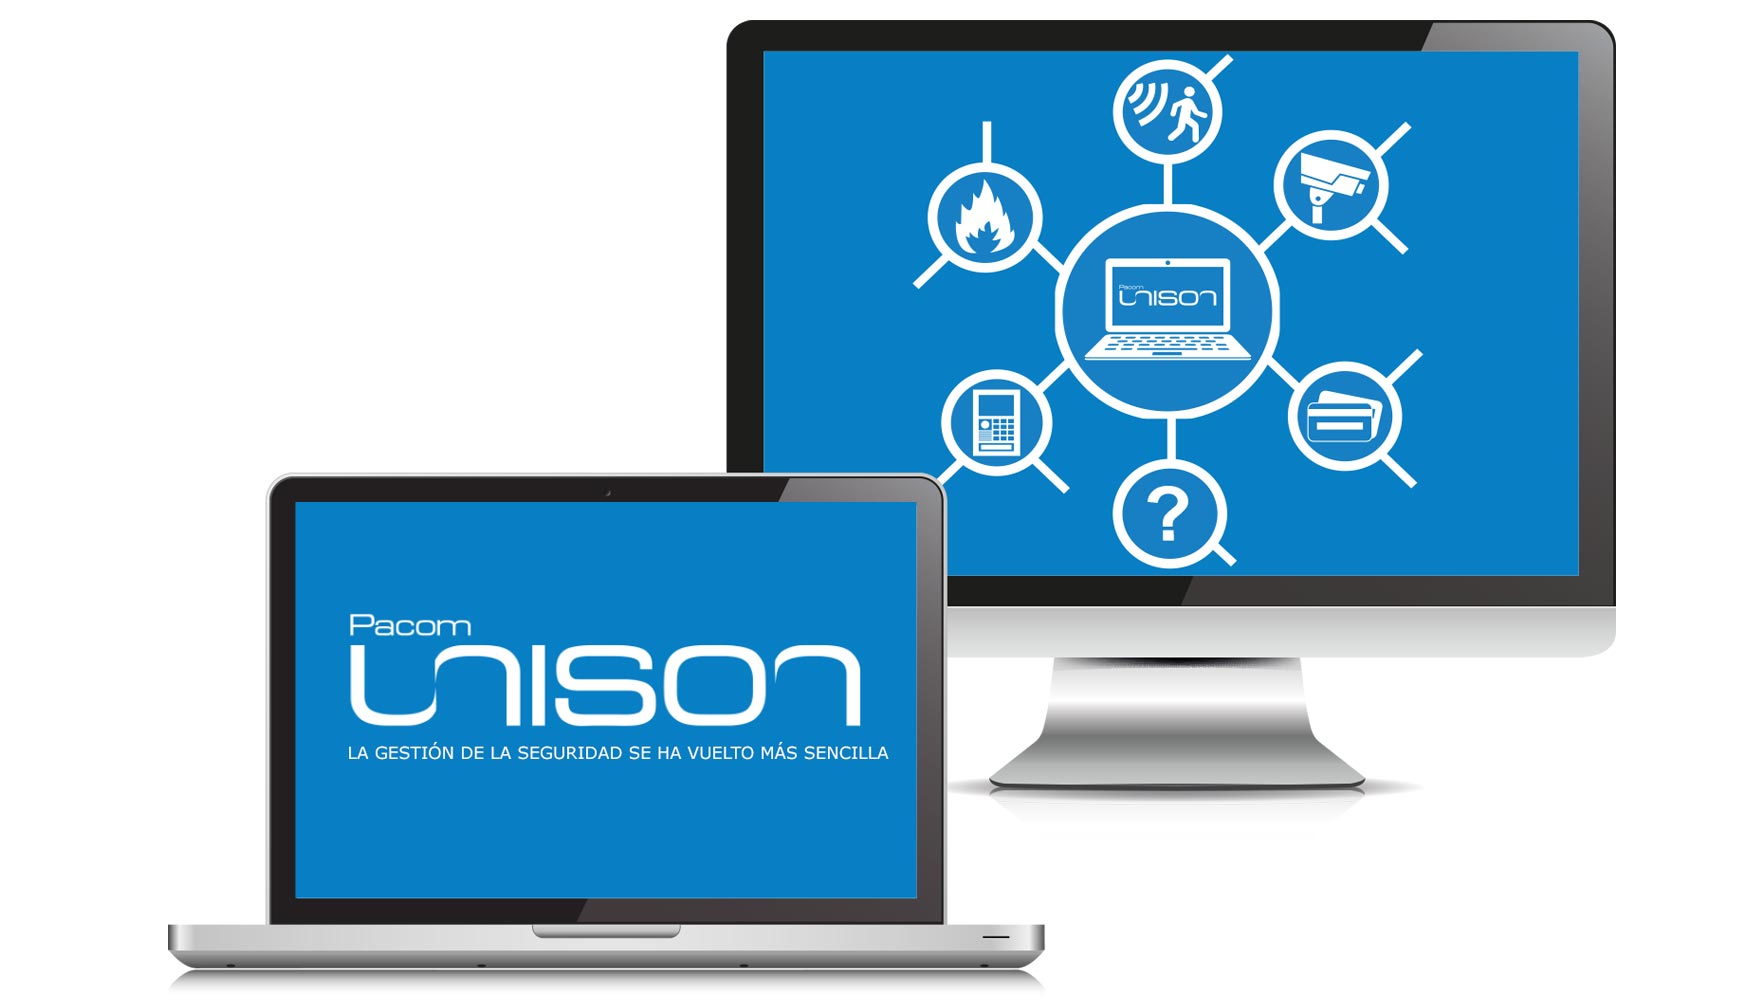 Unison integra una amplia gama de subsistemas de diferentes fabricantes